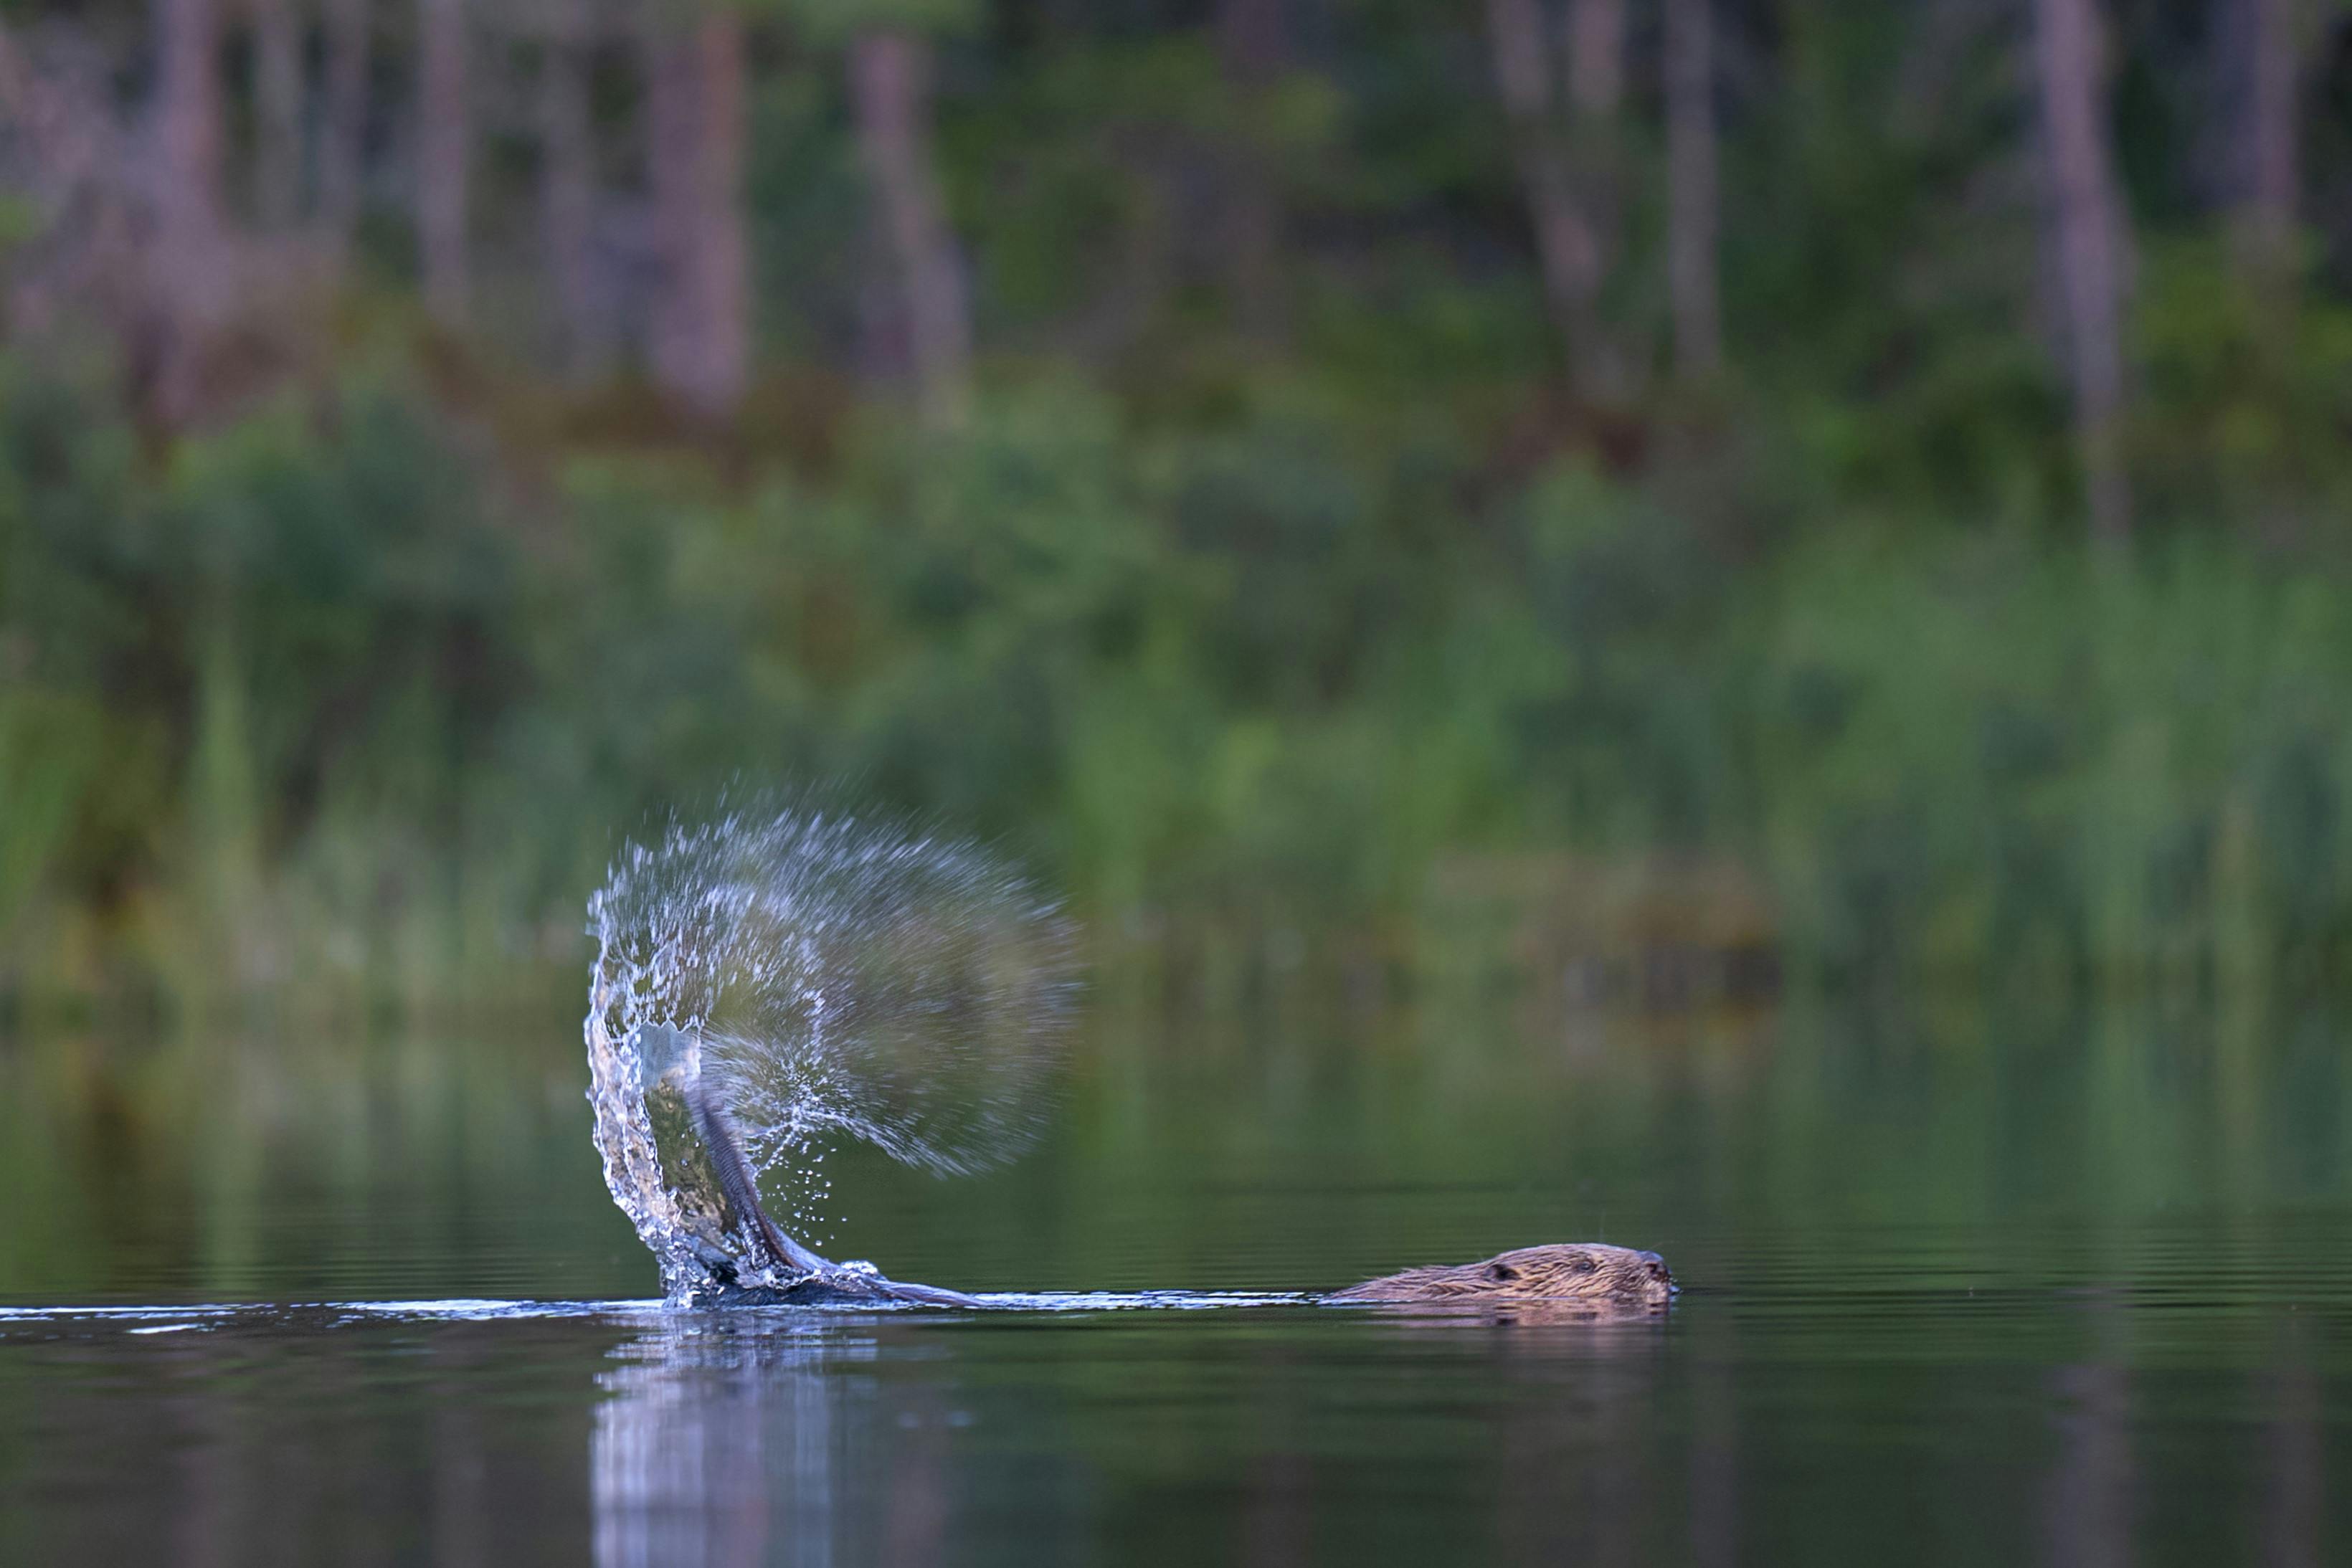 Beaver slaat met zijn staart op het wateroppervlak en stuurt druppels in de lucht, gefotografeerd tijdens beversafari in Zweden door Nordic Discovery.